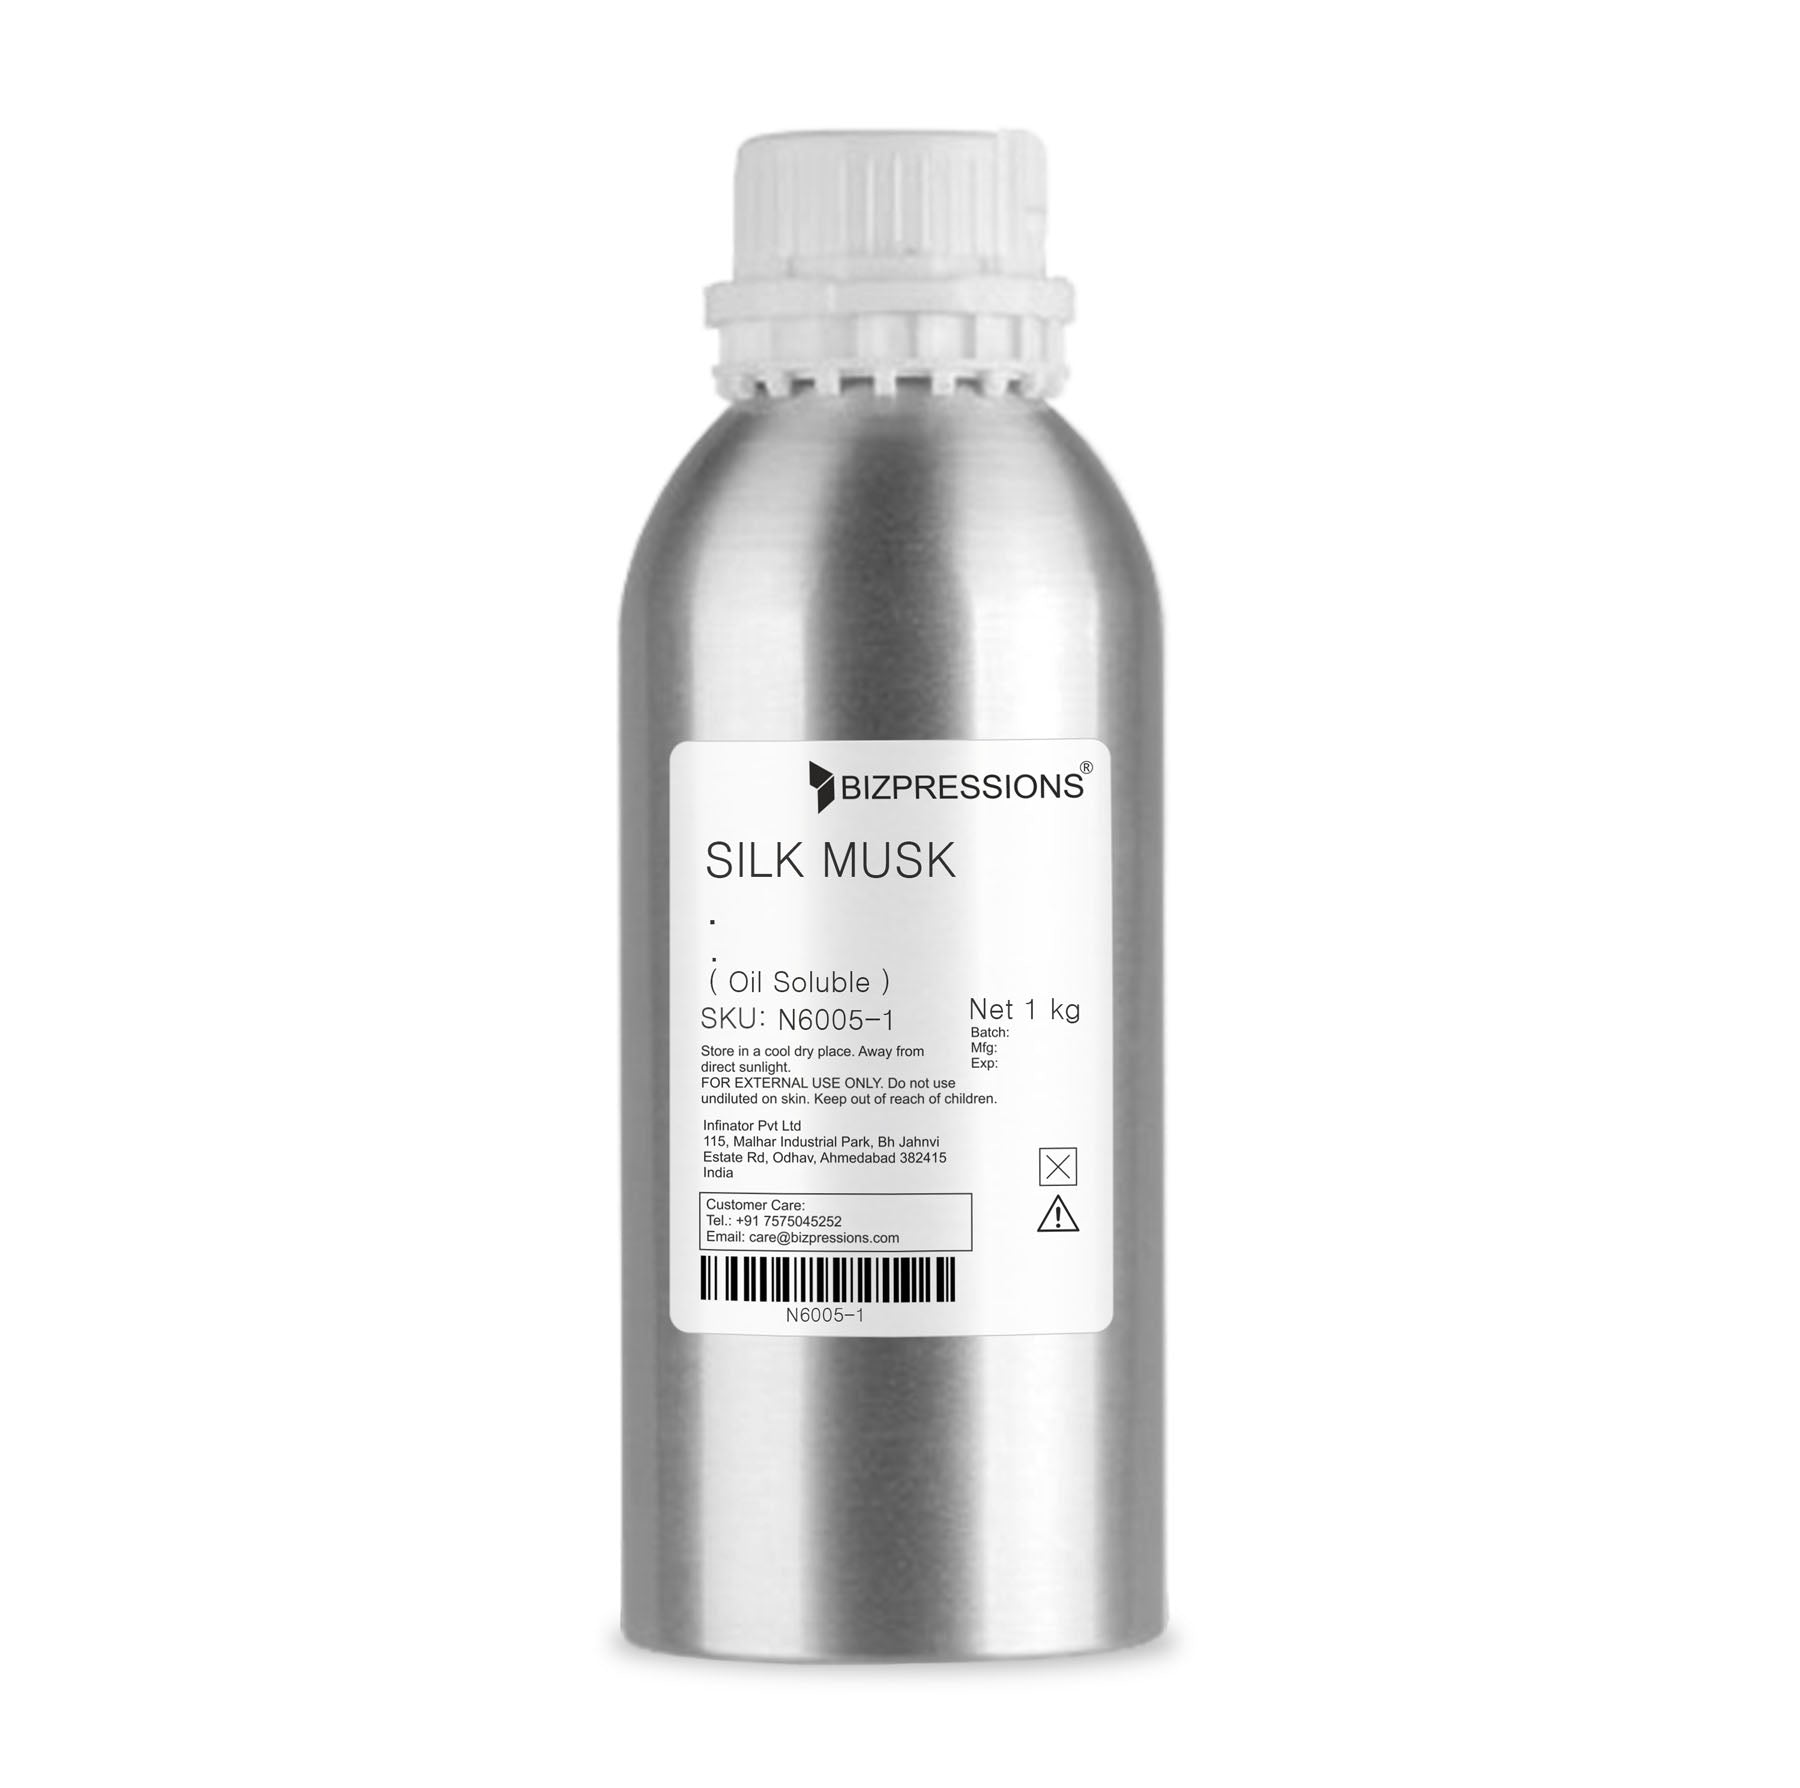 SILK MUSK - Fragrance ( Oil Soluble ) - 1 kg